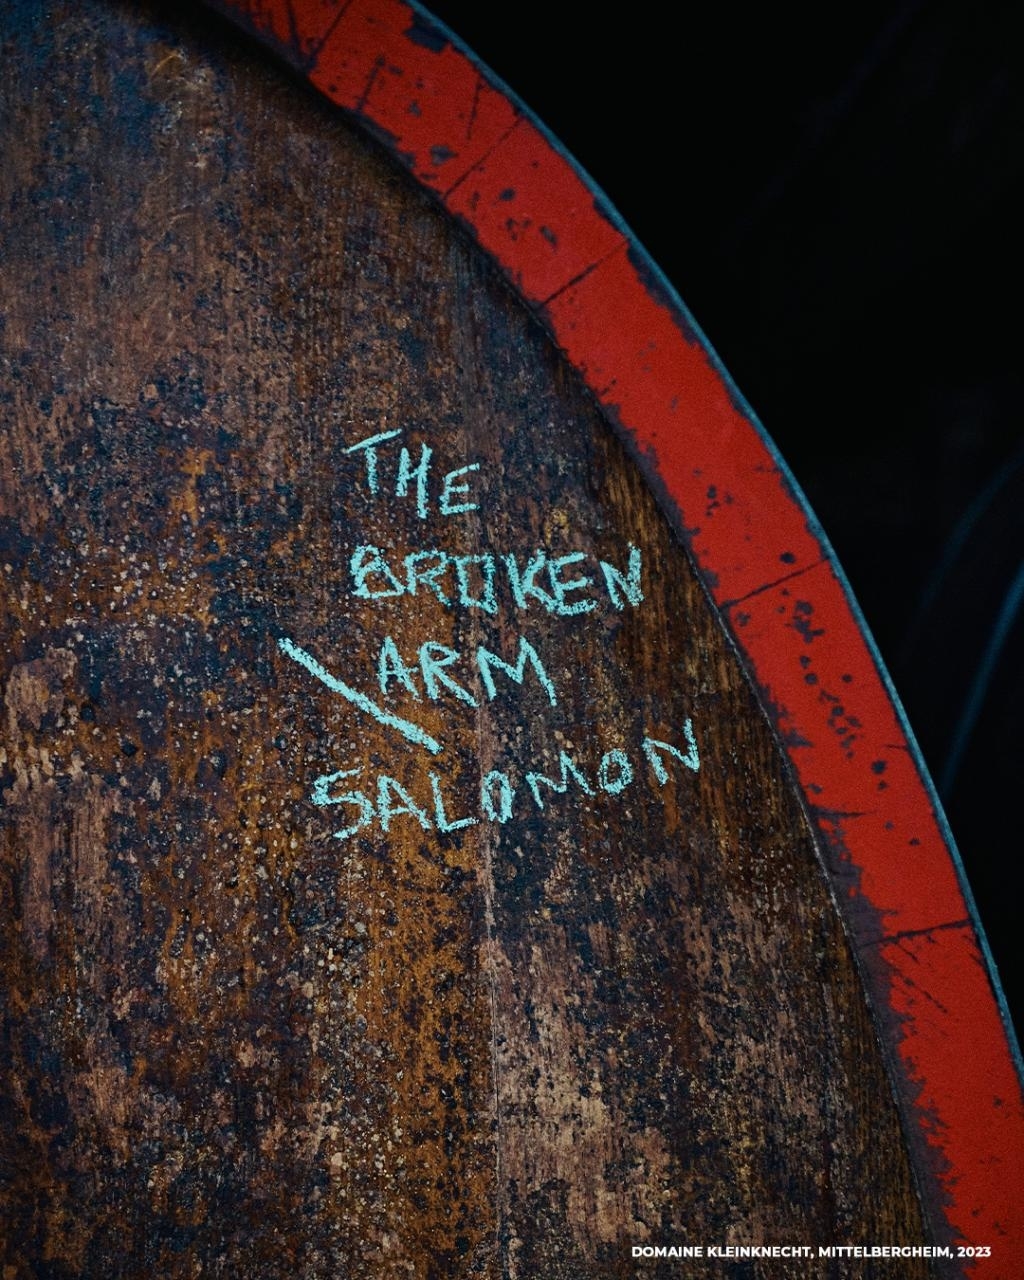 Text on a barrel: &quot;The Drunken Arm Salmon&quot; by Domäne Kikunoknecht, Mittelrhein, 2023